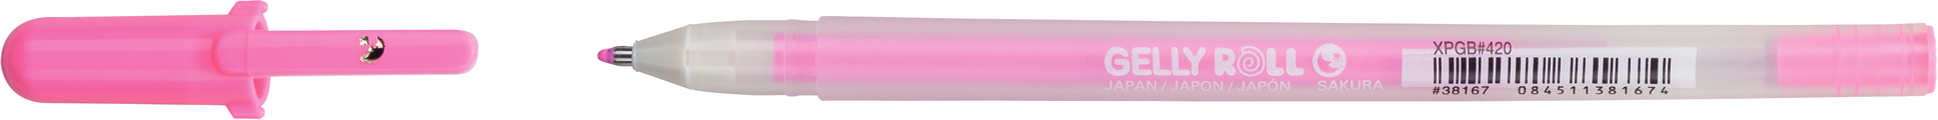 SAKURA Gelly Roll 0.5mm XPGB420 Moonlight Fluo rosa Moonlight Fluo rosa